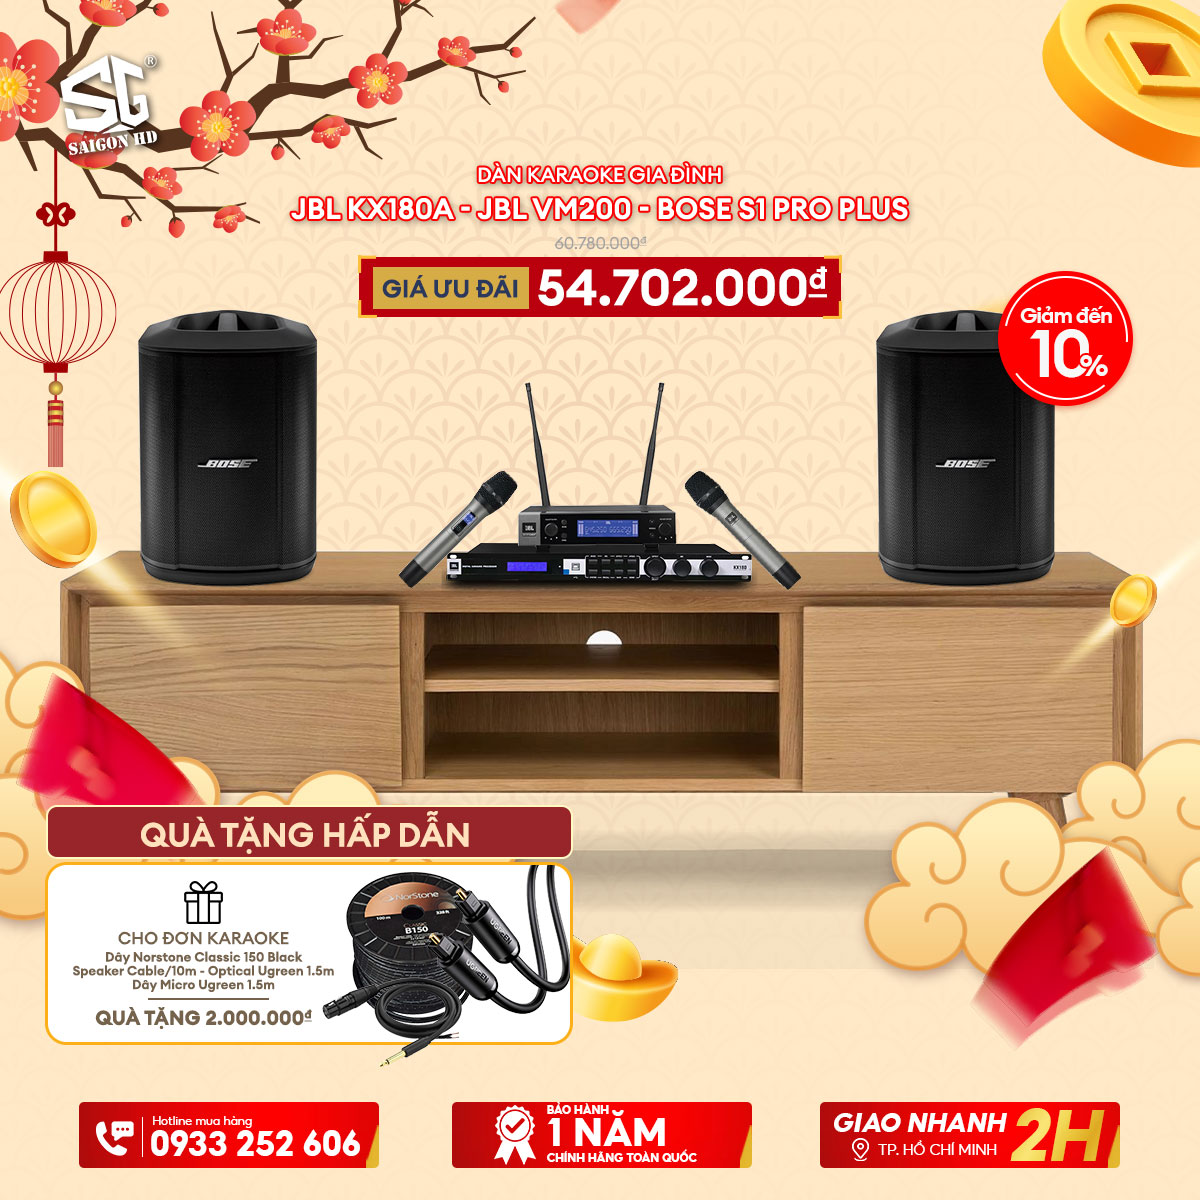 Dàn karaoke JBL KX180A + JBL VM200 + Bose S1 Pro Plus